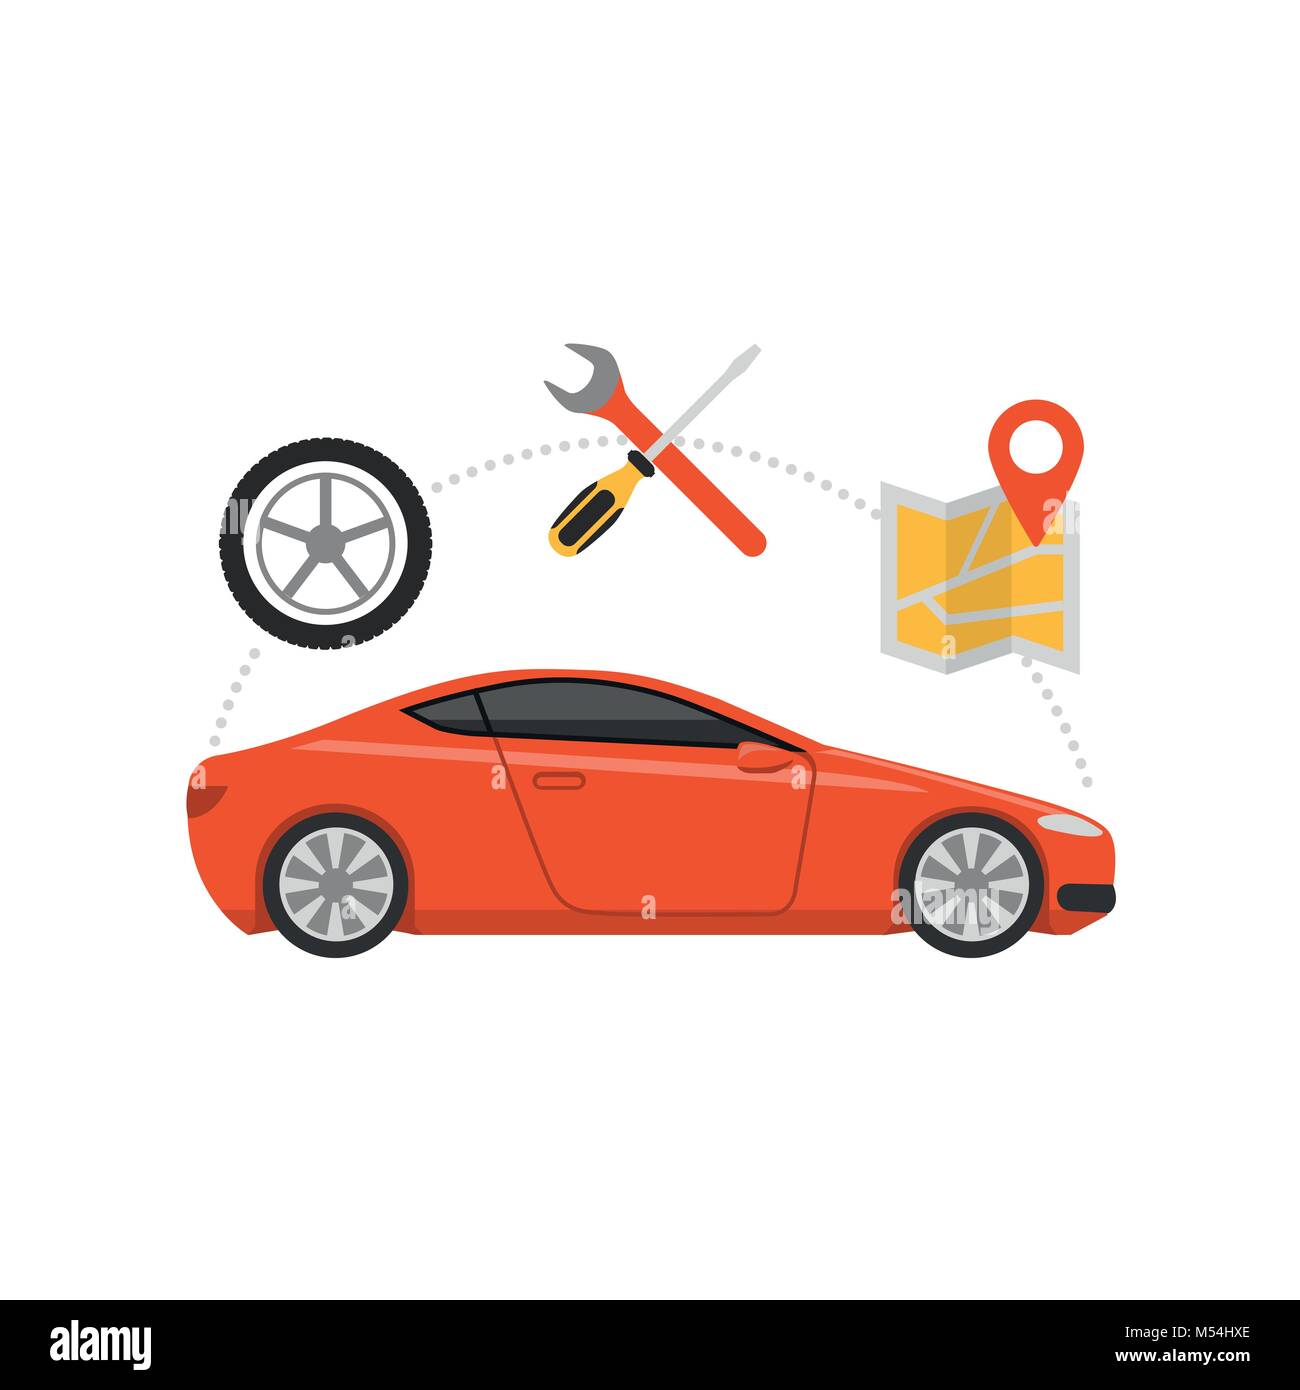 El mantenimiento del automóvil y la navegación gps, automoción y asistencia en carretera, concepto Ilustración del Vector